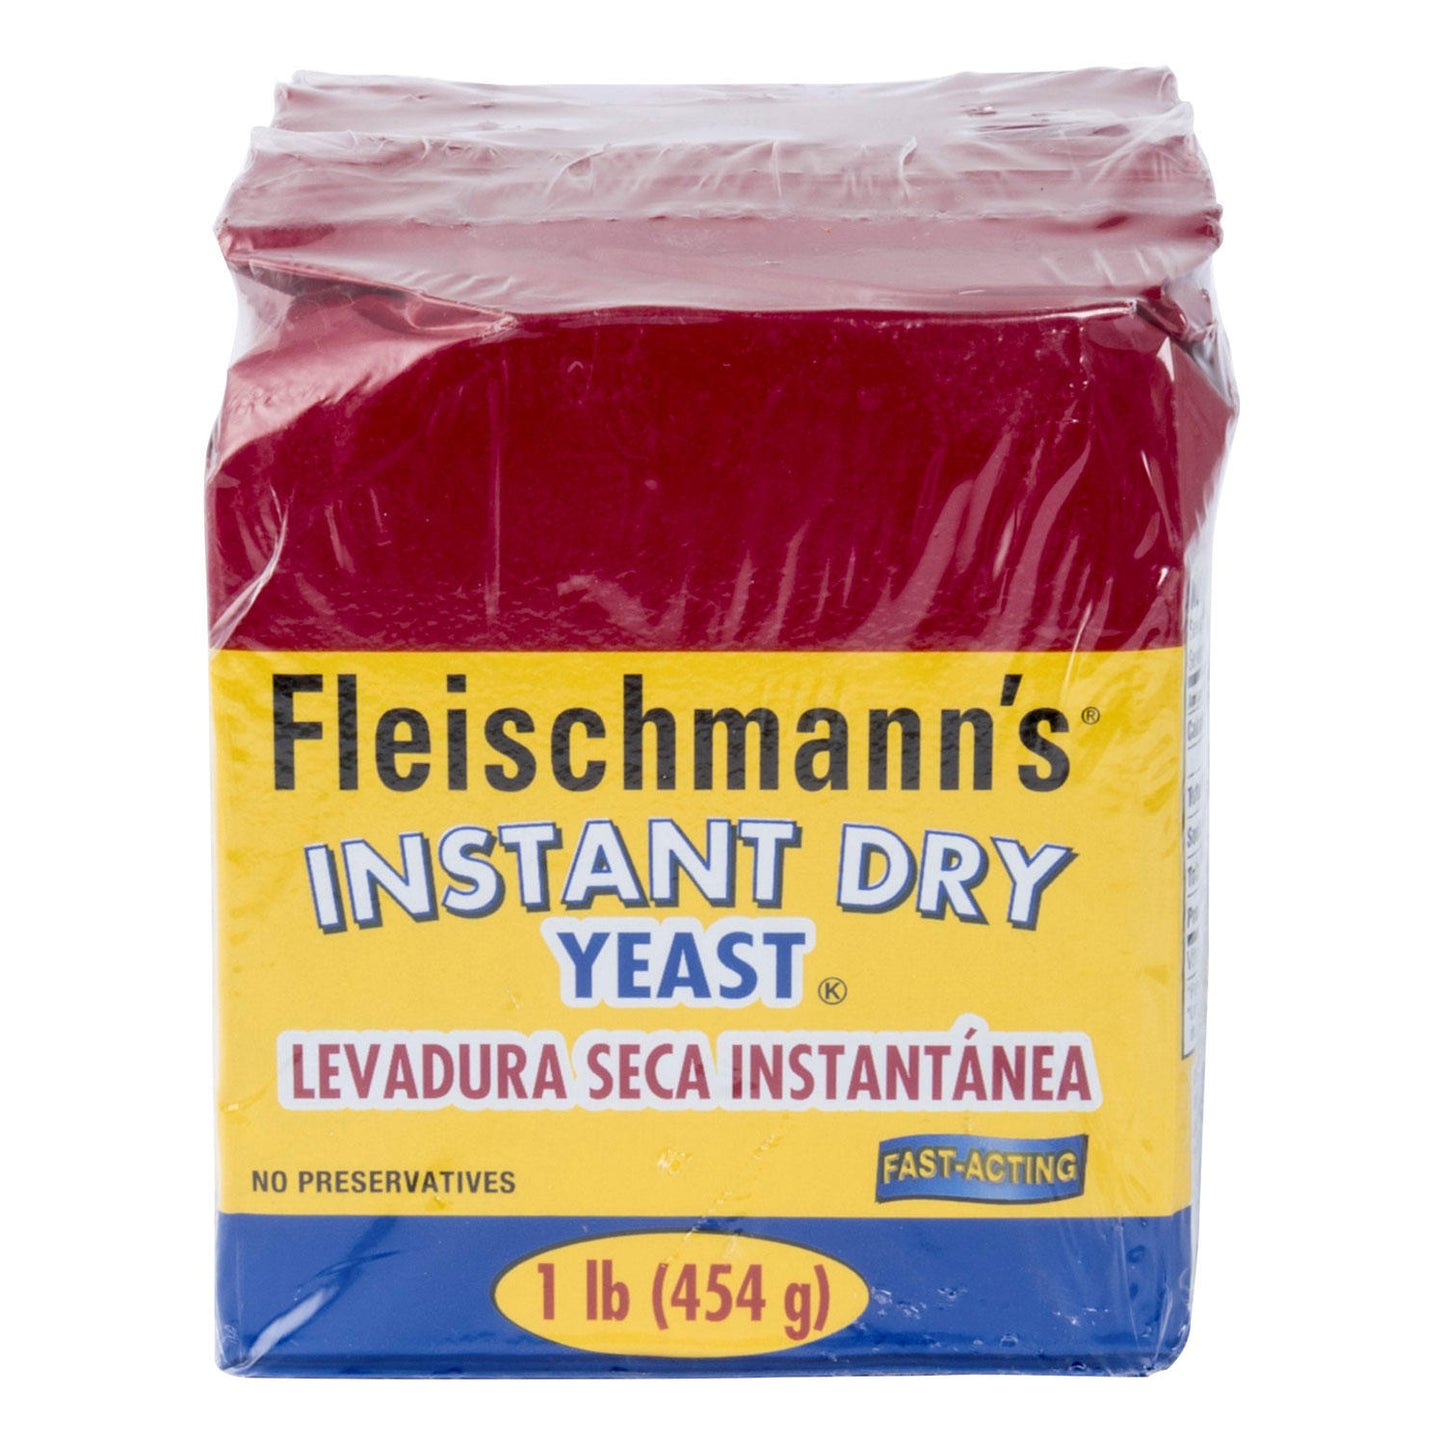 Fleischmann's Instant Dry Yeast (16 oz., 2 pk.)